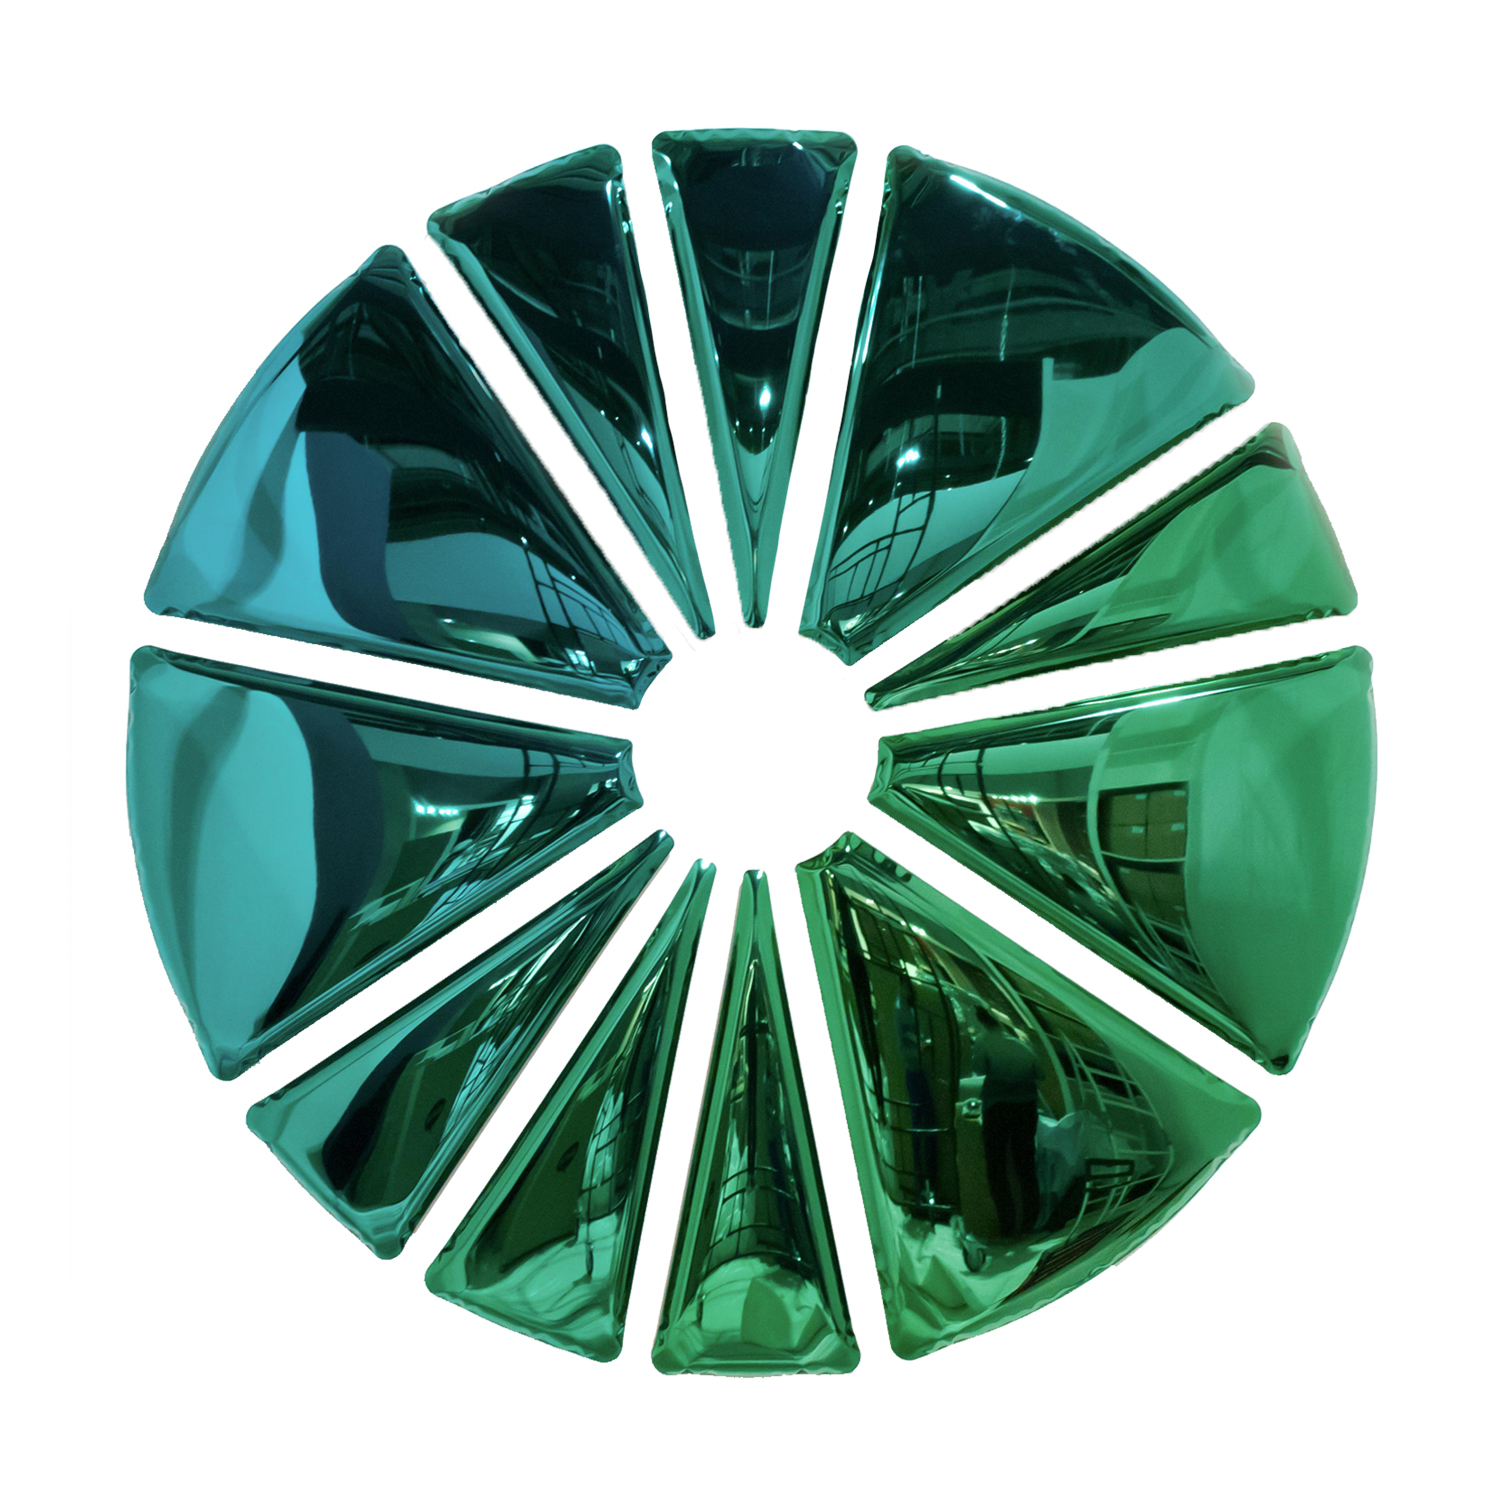 Zieta designová zrcadla Nucleus Gradient (Ø 300 cm)